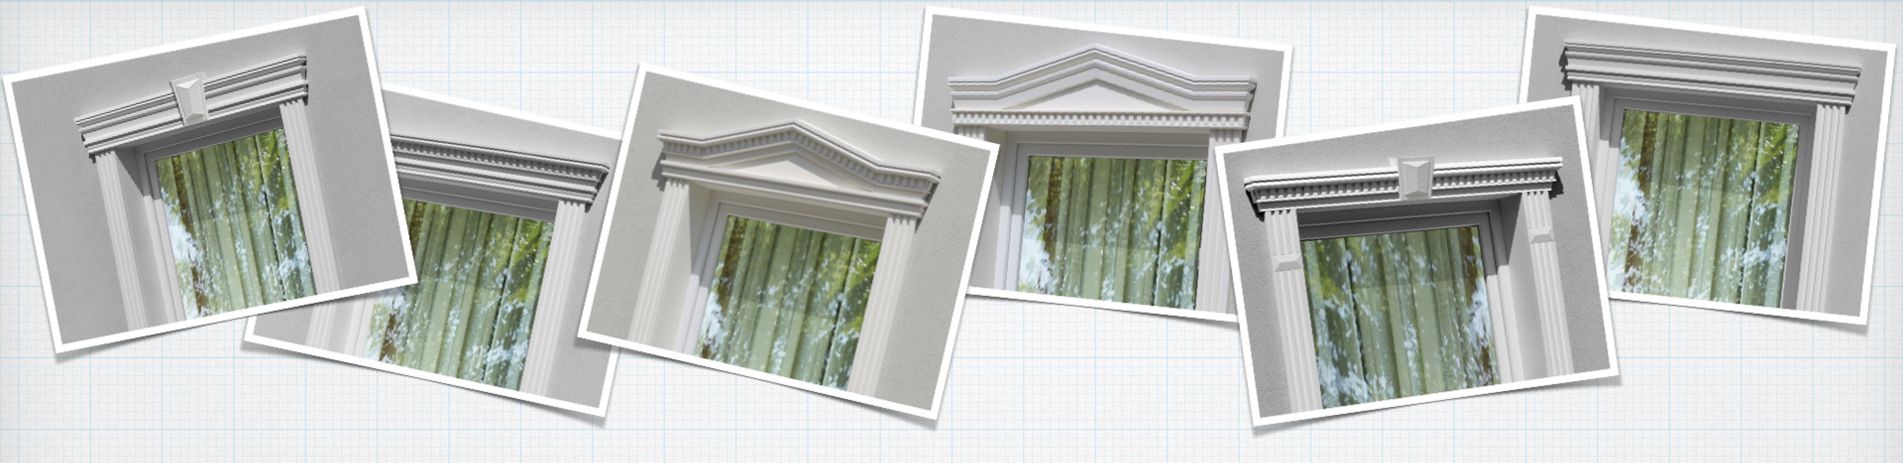 Homlokzatstukkó komplett megoldás: timpanonok ablakszemöldökhöz